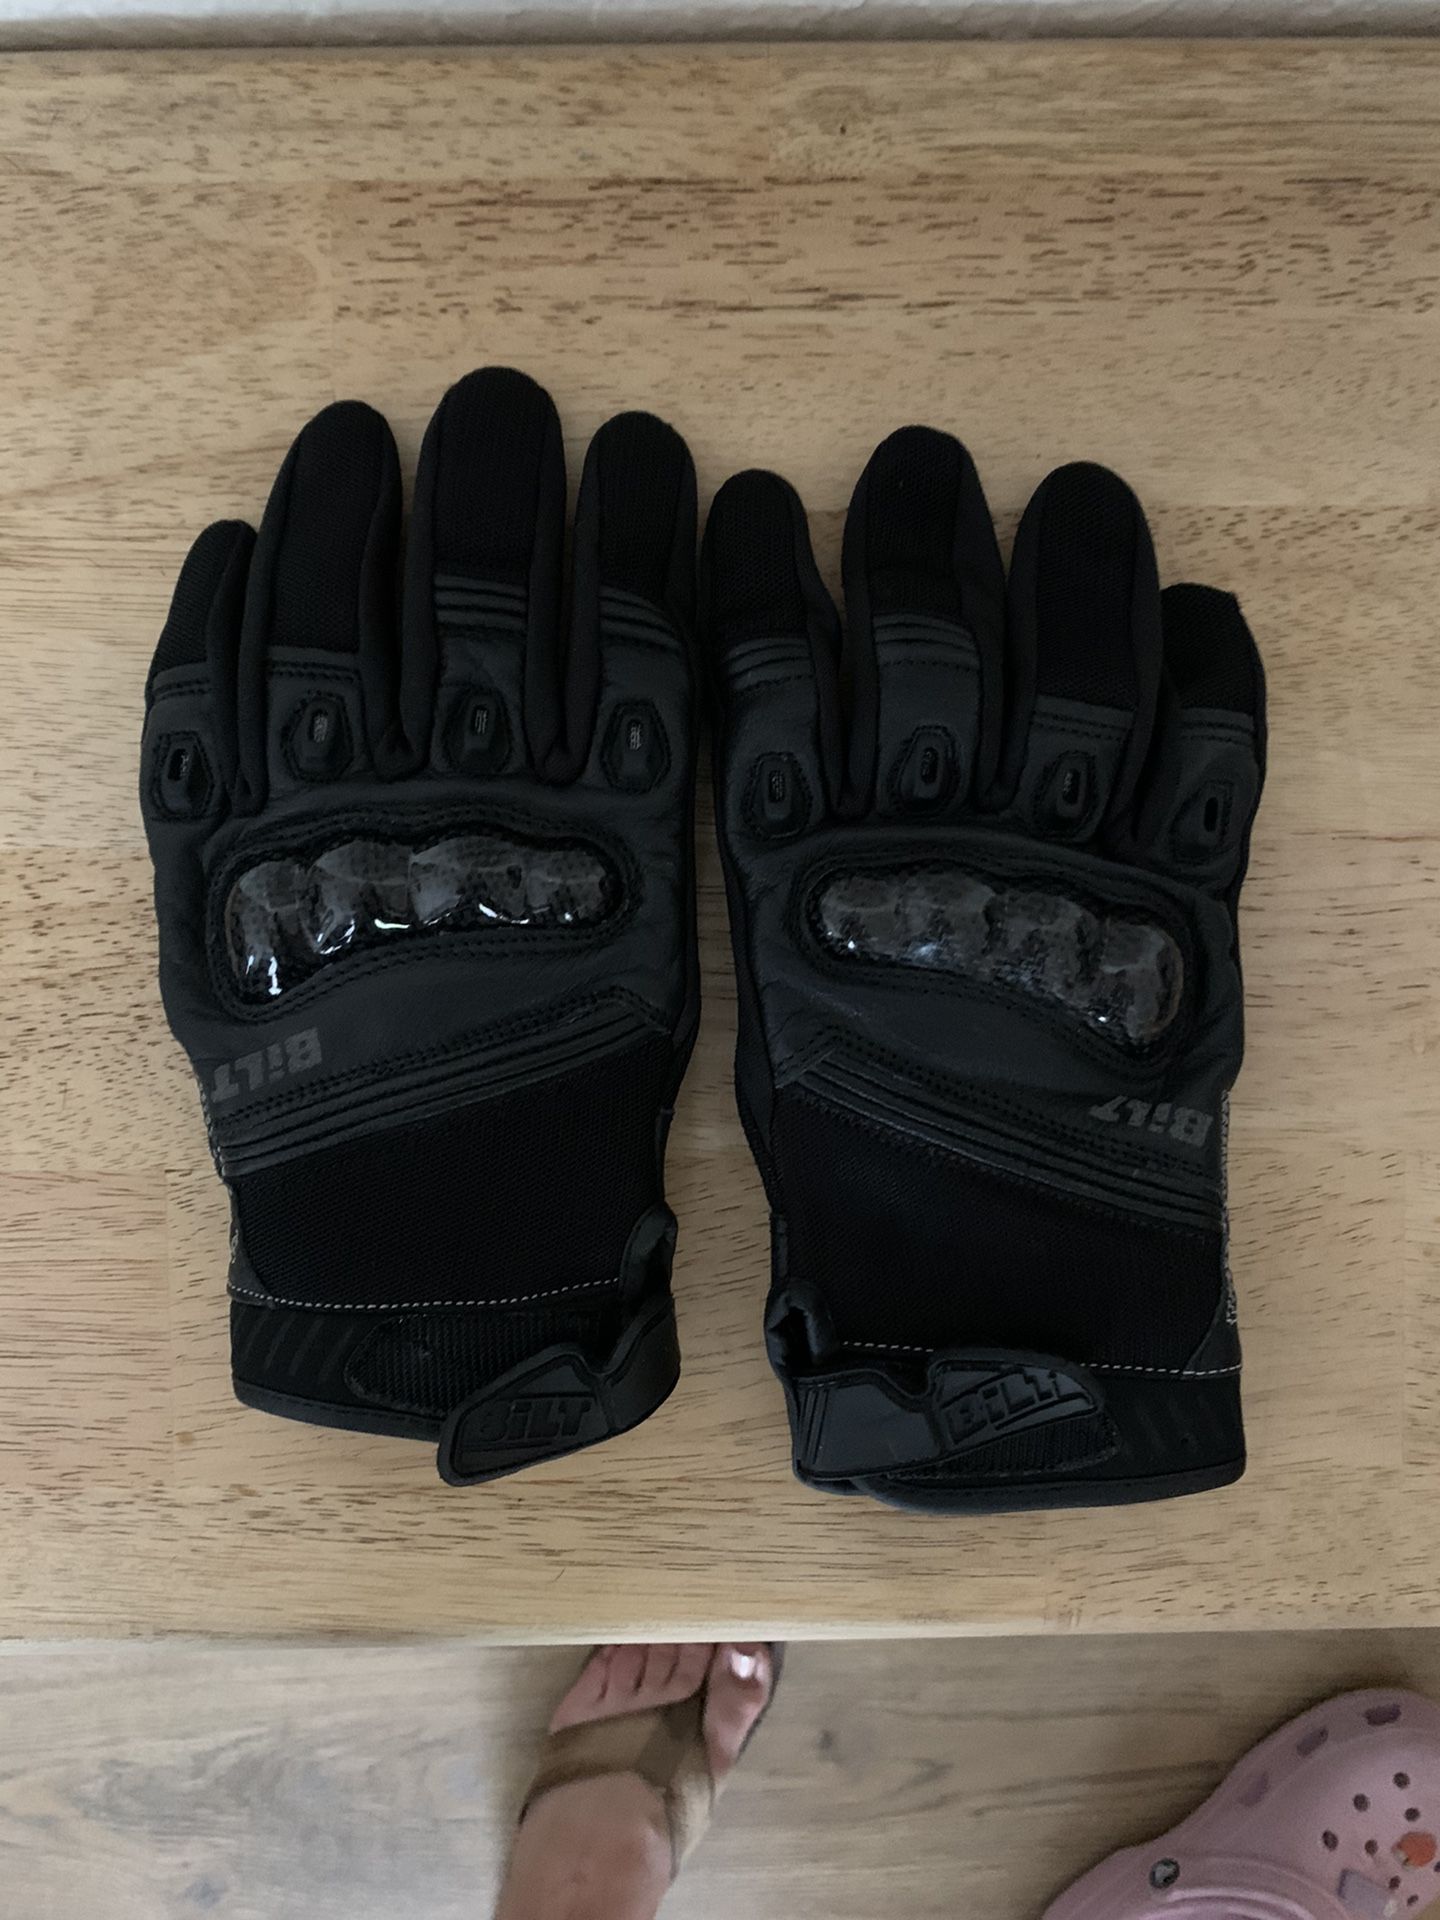 Women’s Motorcycle Gear - Helmet, Gloves, Jacket